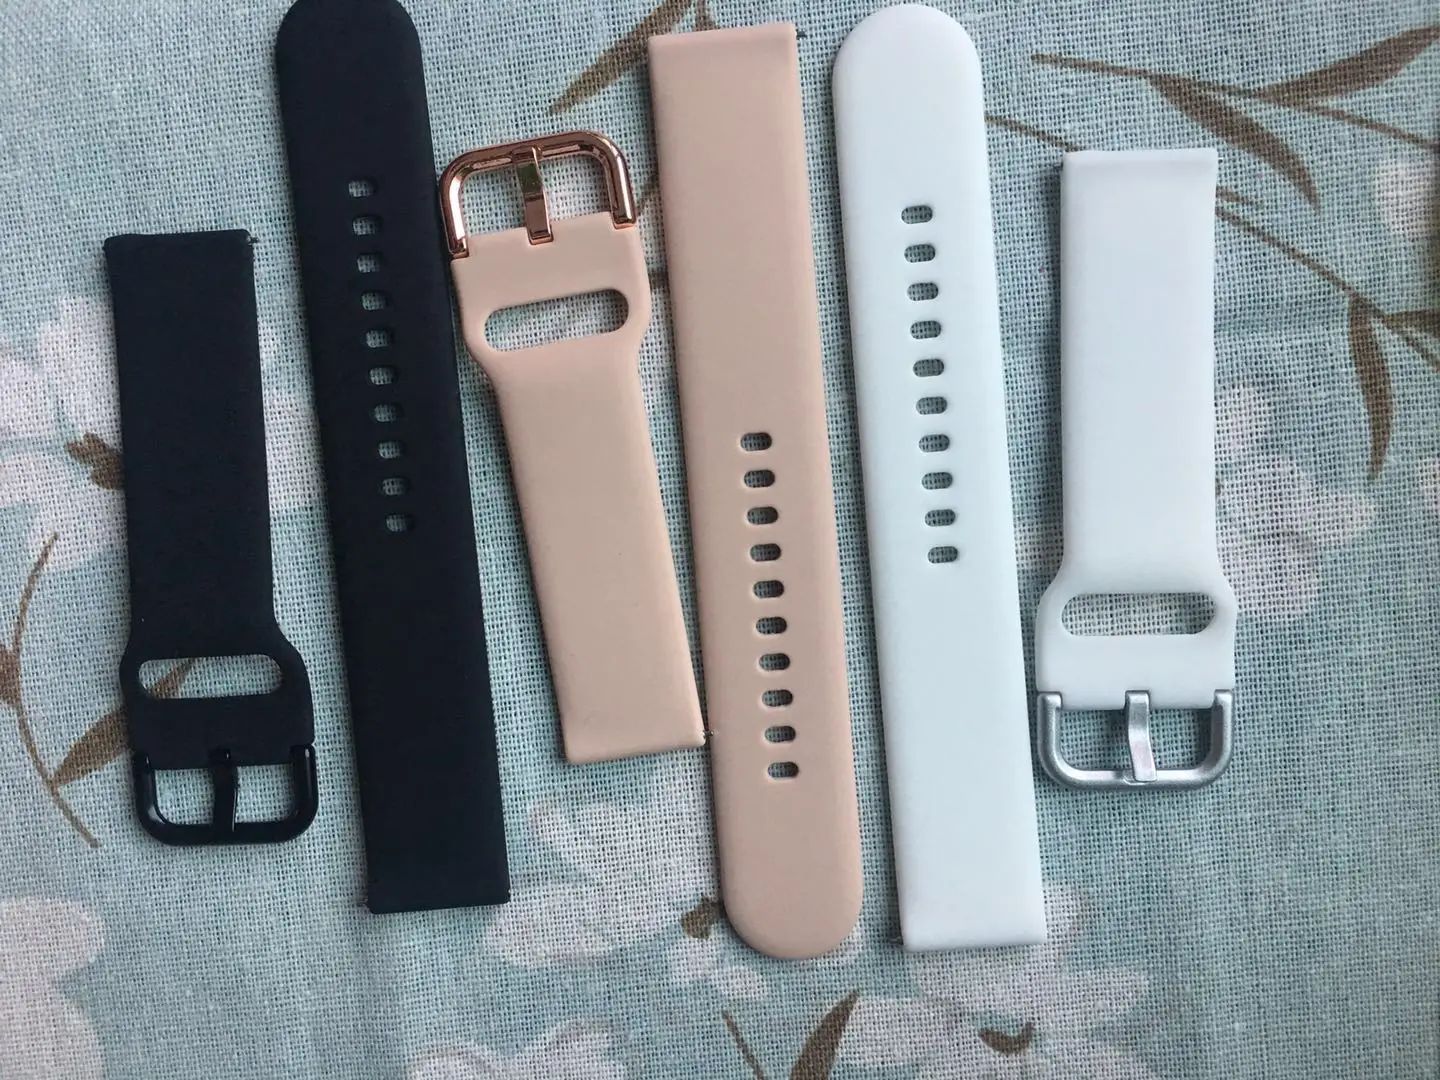 20 мм силиконовый ремешок для часов Ремешок Для Xiaomi Huami Amazfit Bip Смарт часы замена Мужские t спортивный браслет ремешок для мужчин и женщин